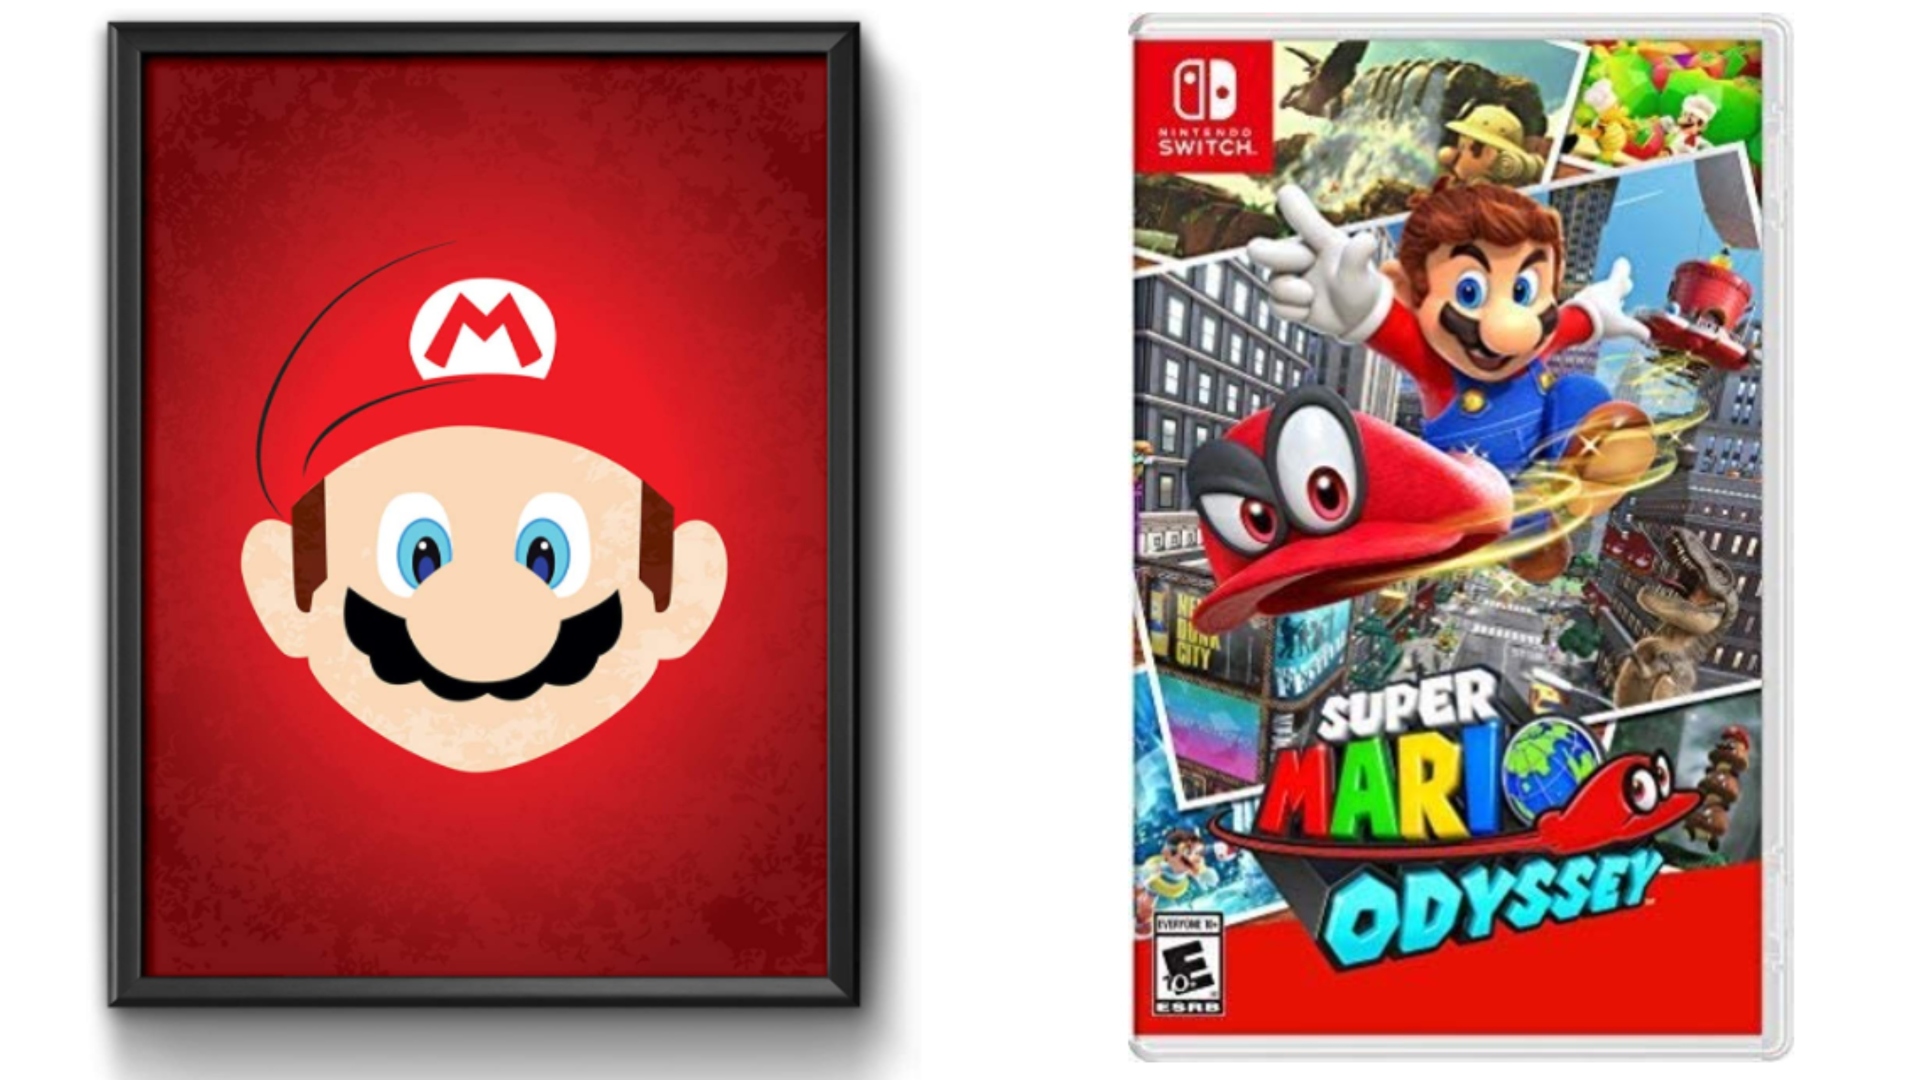 9 melhores jogos do Mario para celebrar o final de semana do Mar10 Day